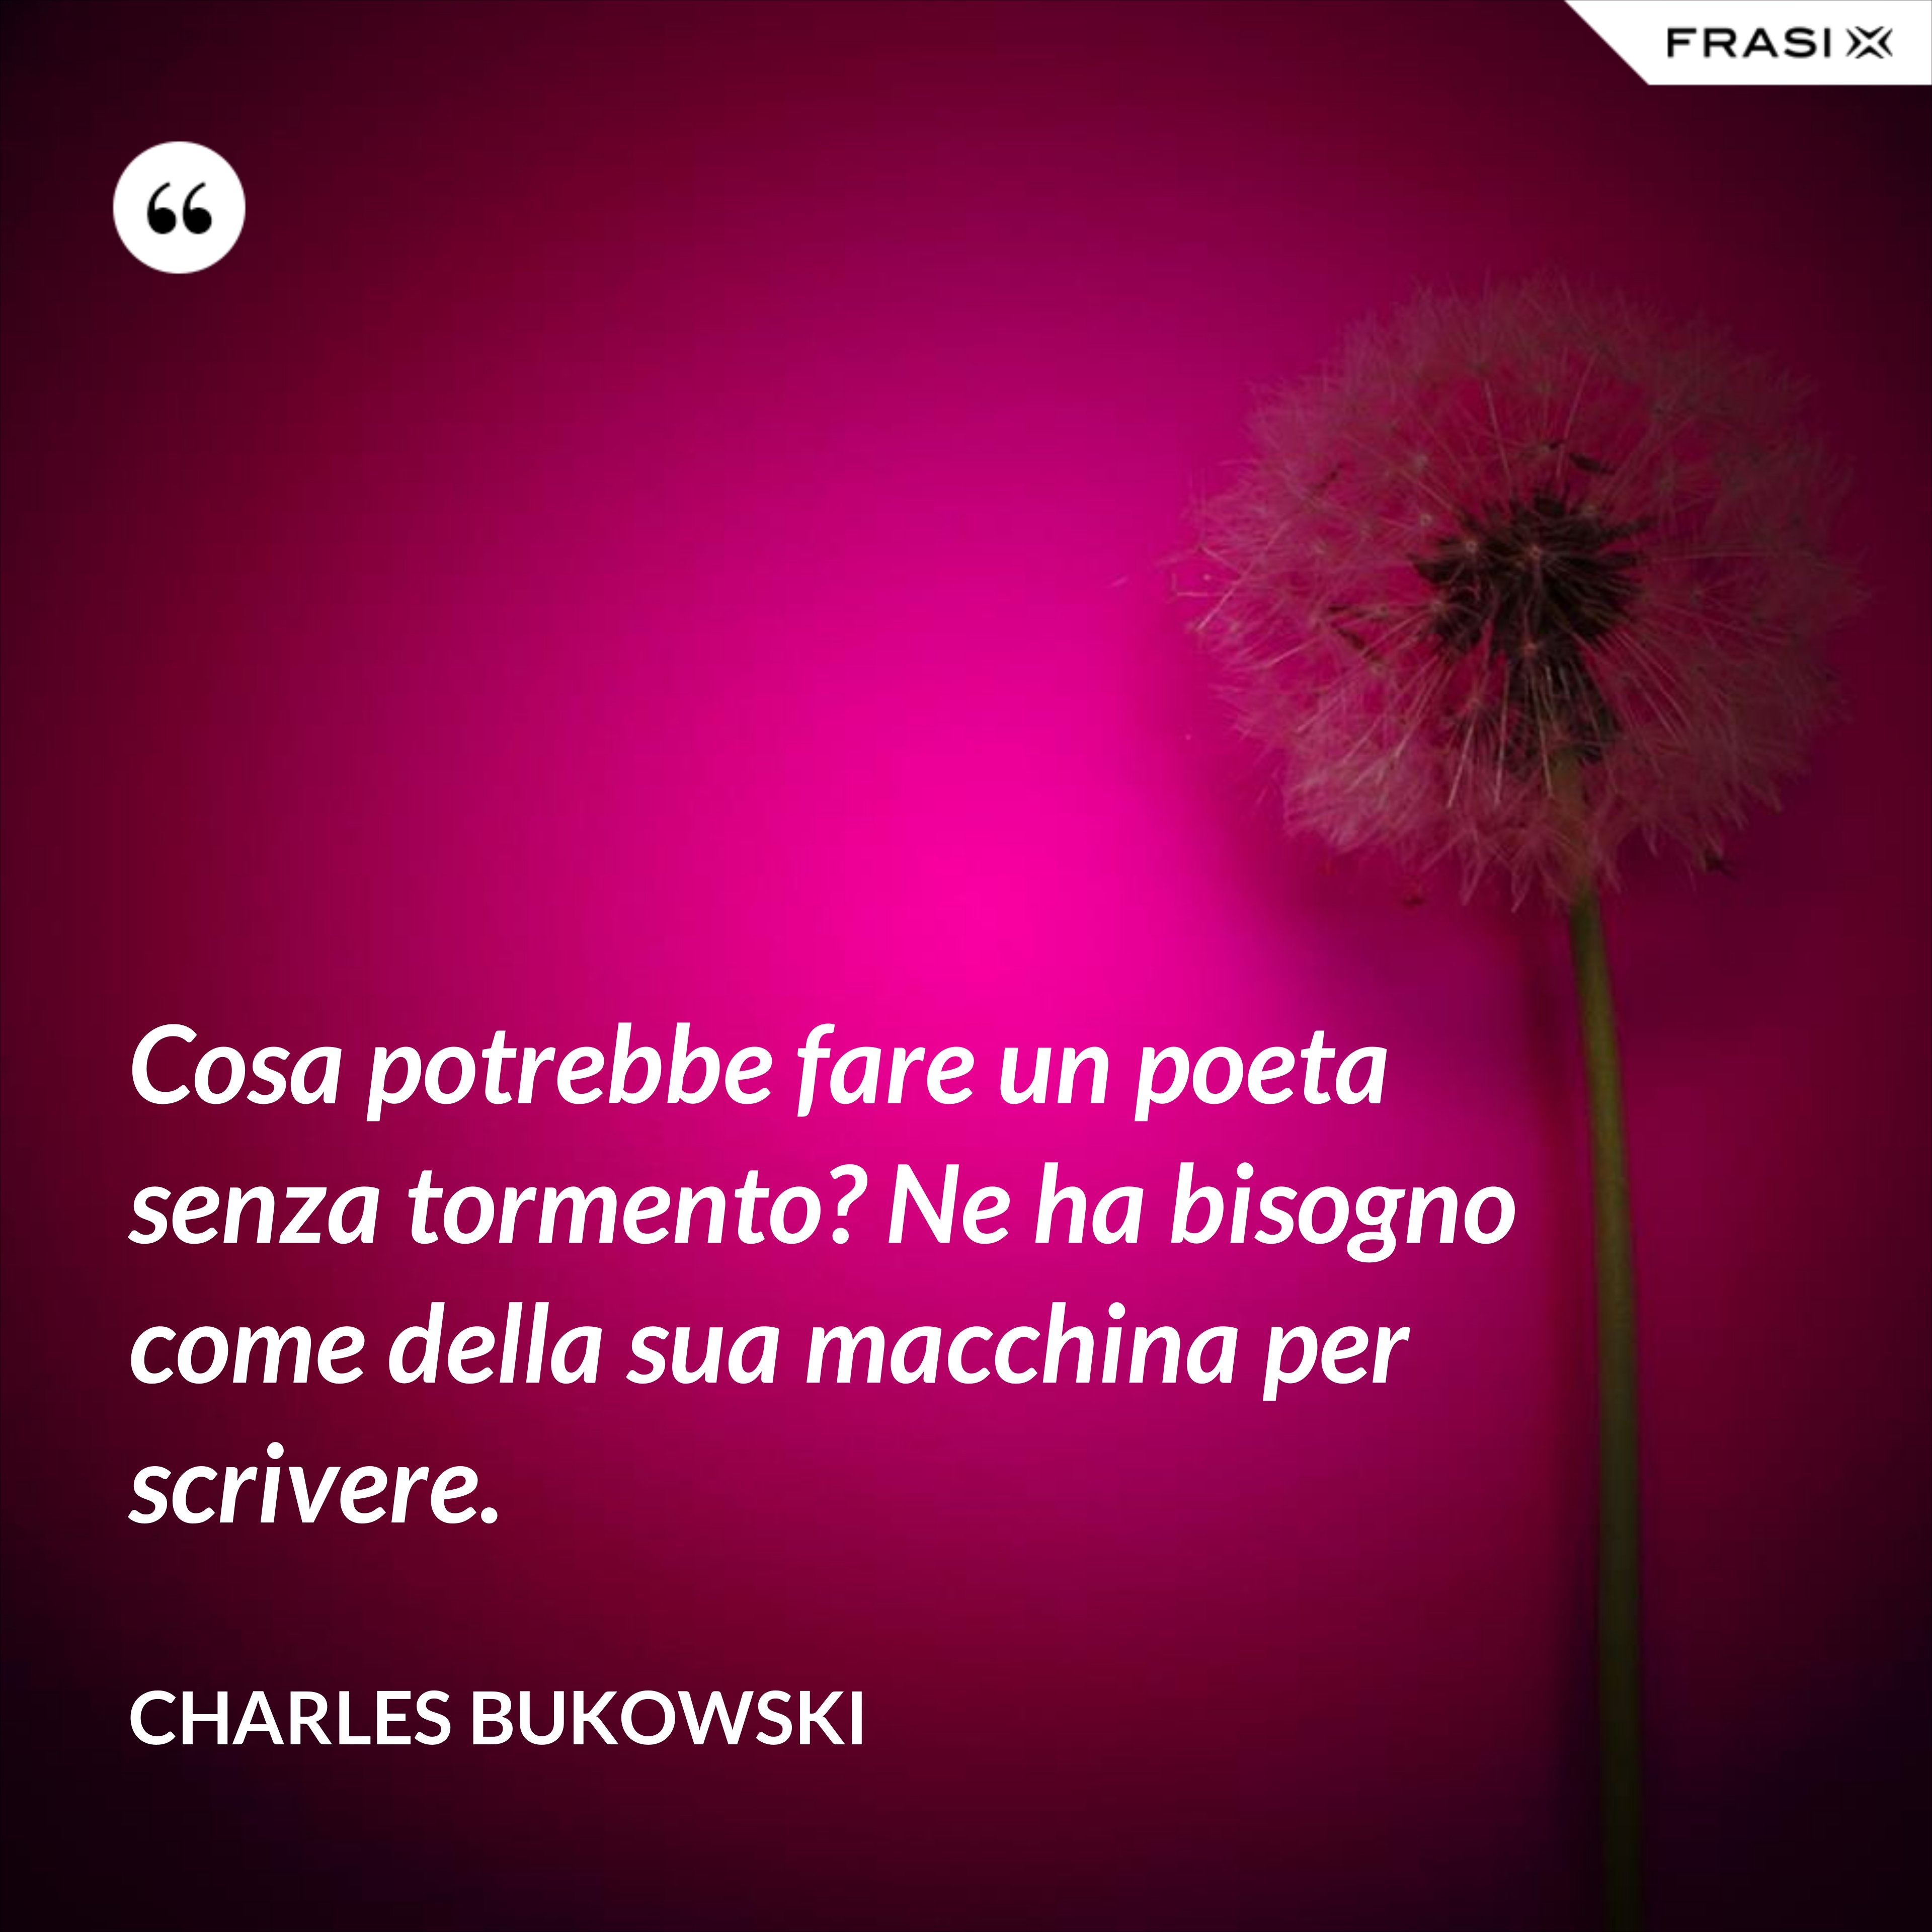 Cosa potrebbe fare un poeta senza tormento? Ne ha bisogno come della sua macchina per scrivere. - Charles Bukowski